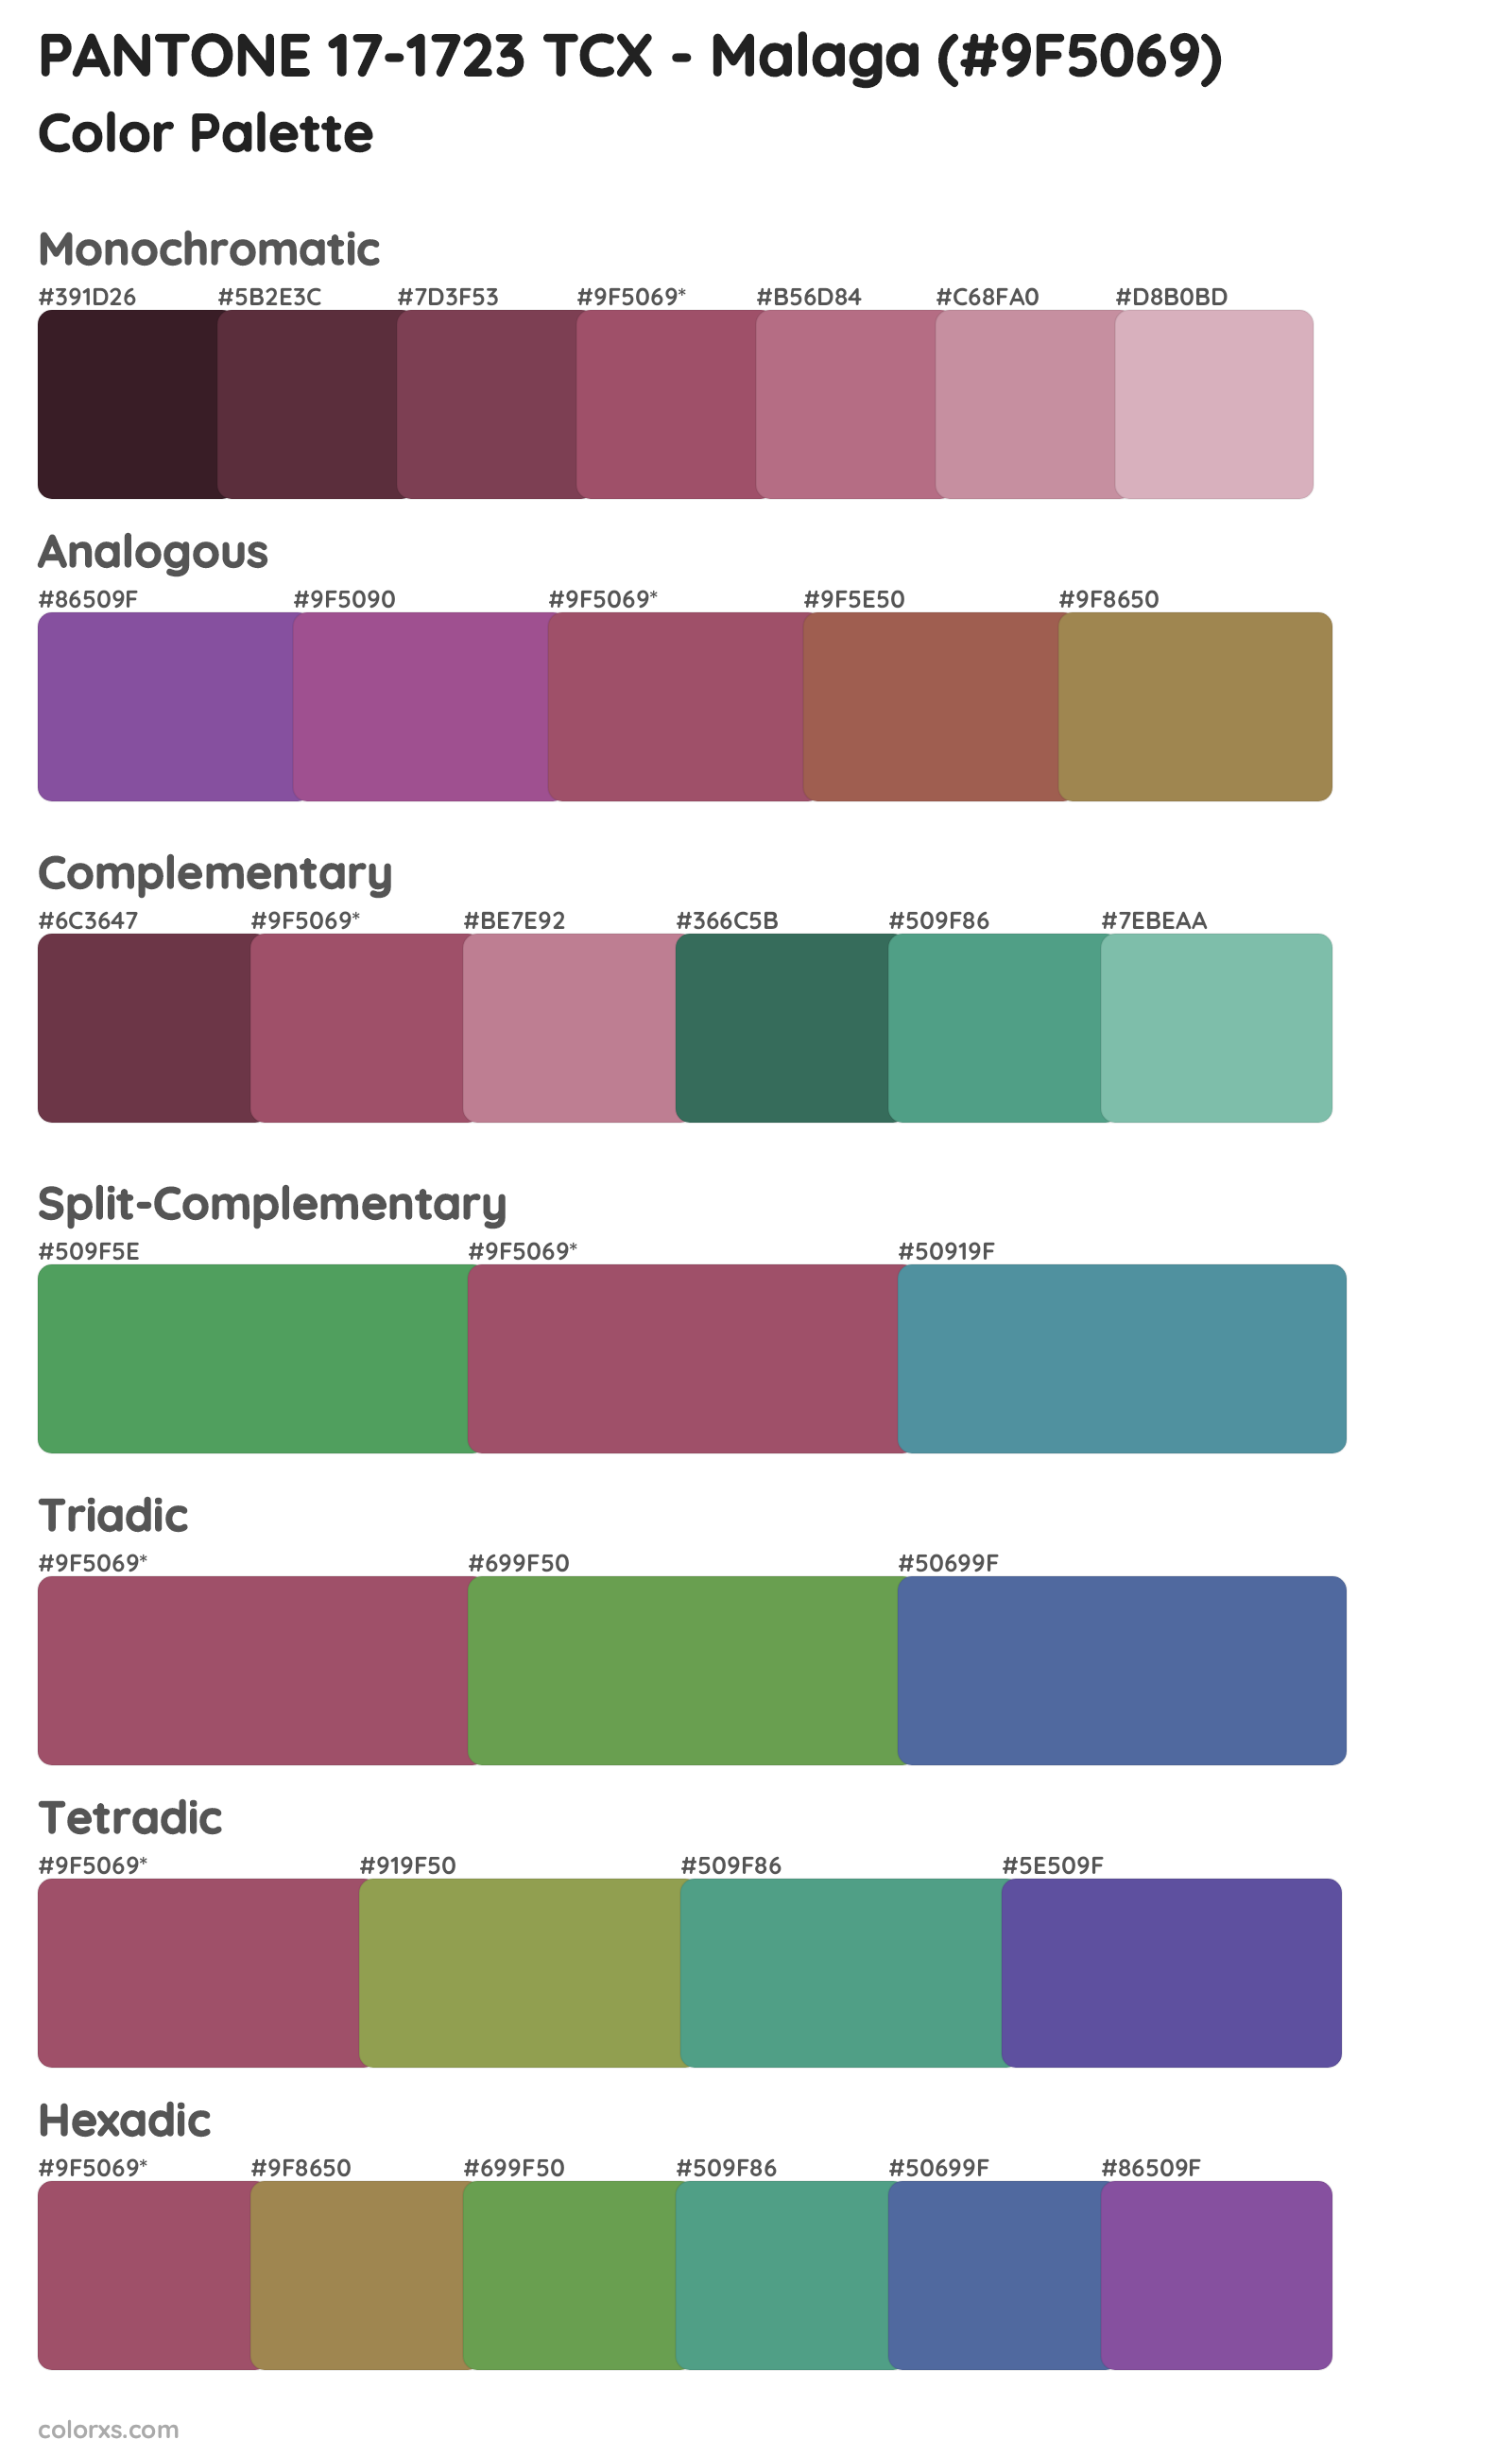 PANTONE 17-1723 TCX - Malaga Color Scheme Palettes